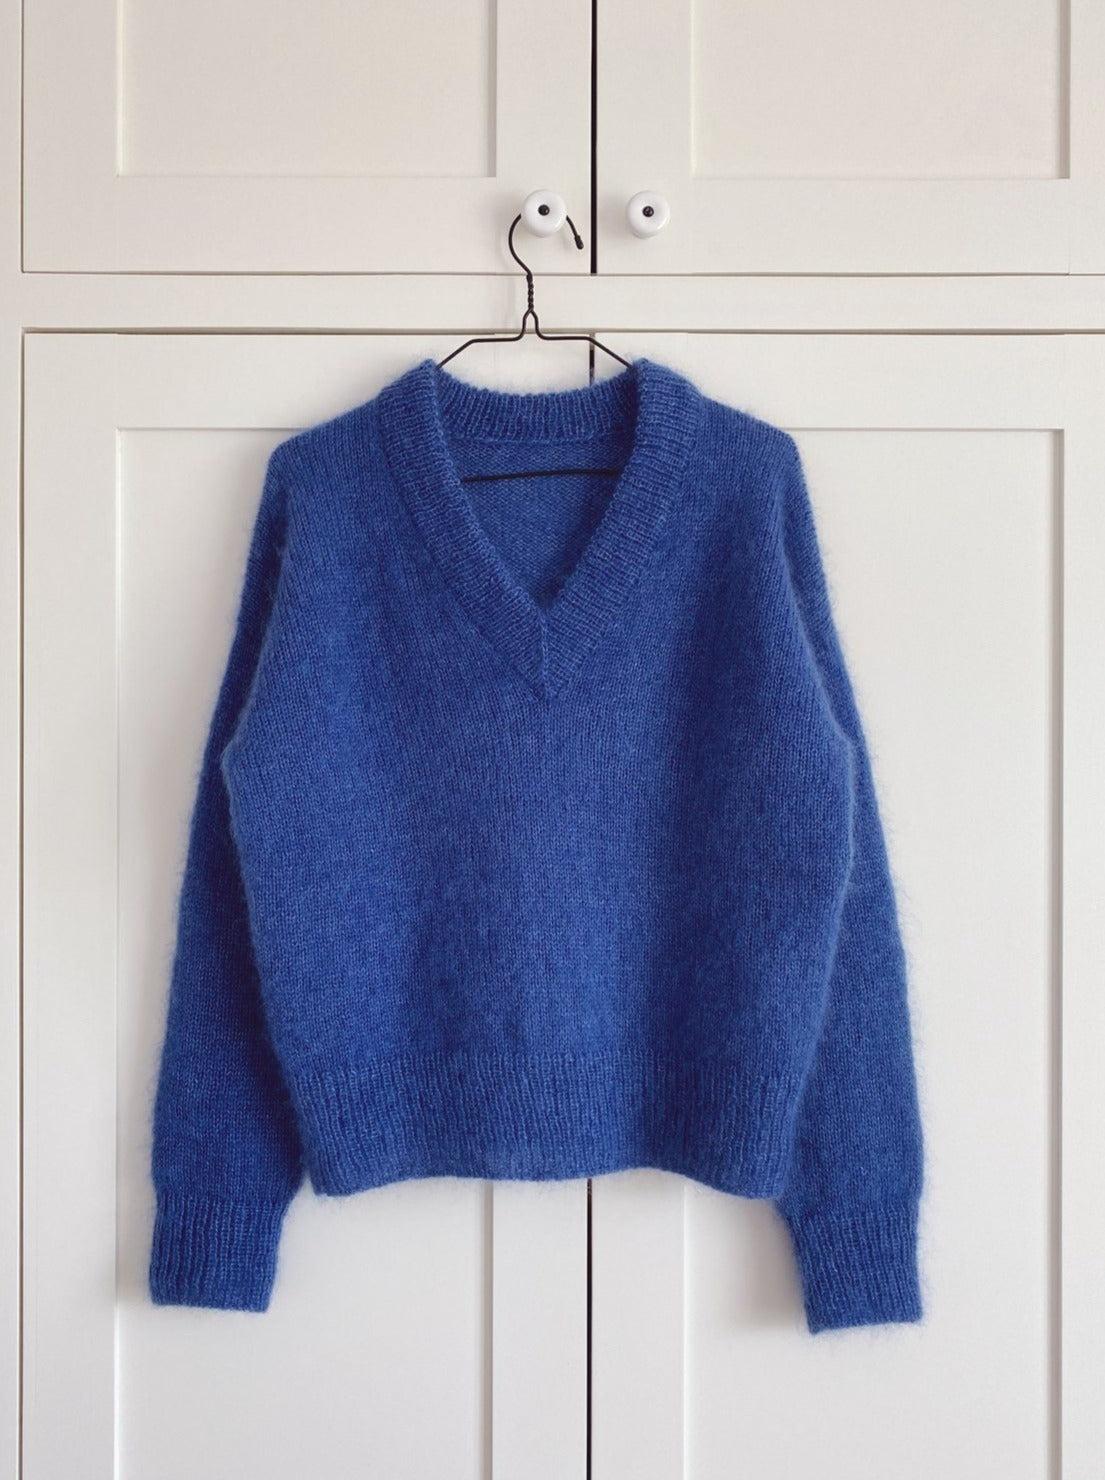 #3 - Stockholm sweater med V-neck fra PetiteKnit, silk mohair strikkekit